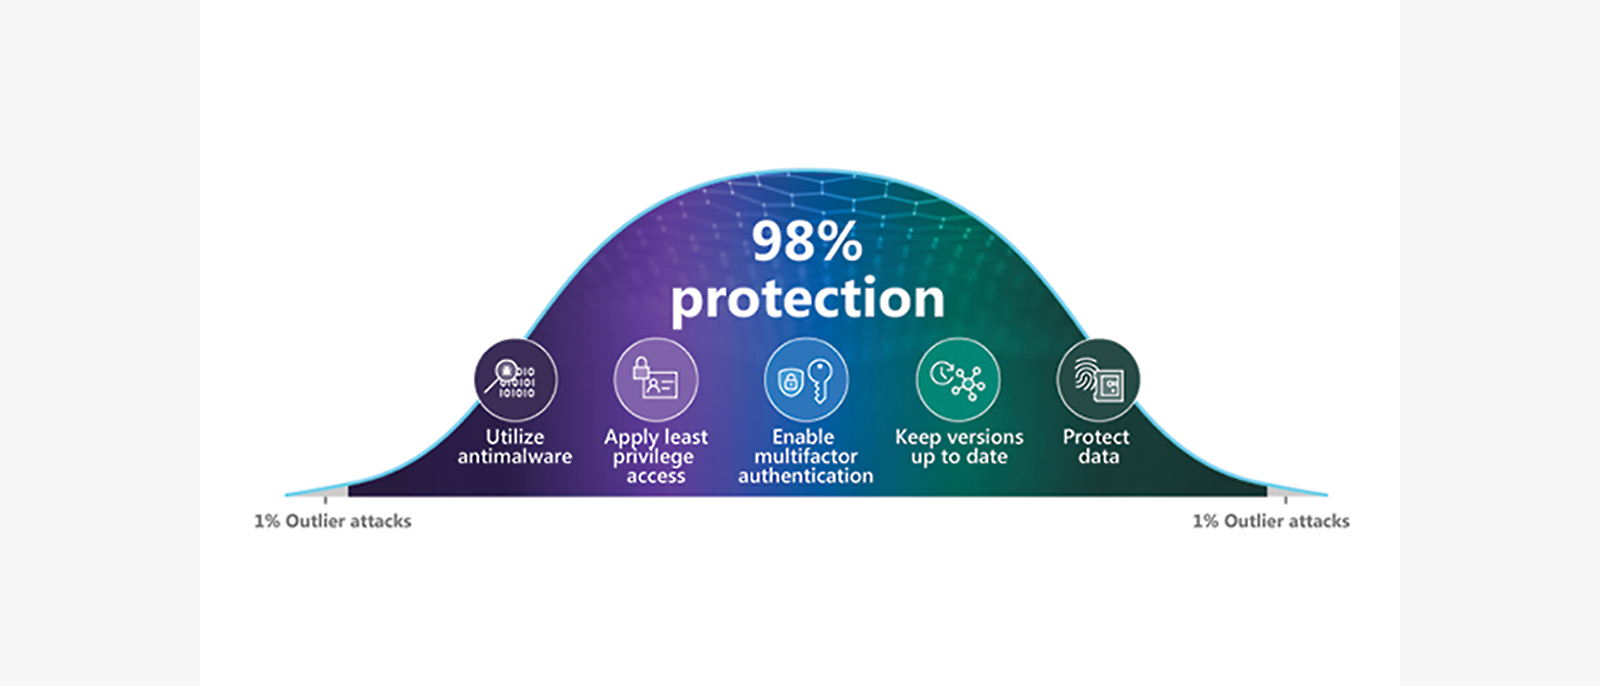 Distribusjonskurve for beskyttelse som viser hvordan grunnleggende sikkerhetshygiene bidrar ti å beskytte mot 98 % av angrepene